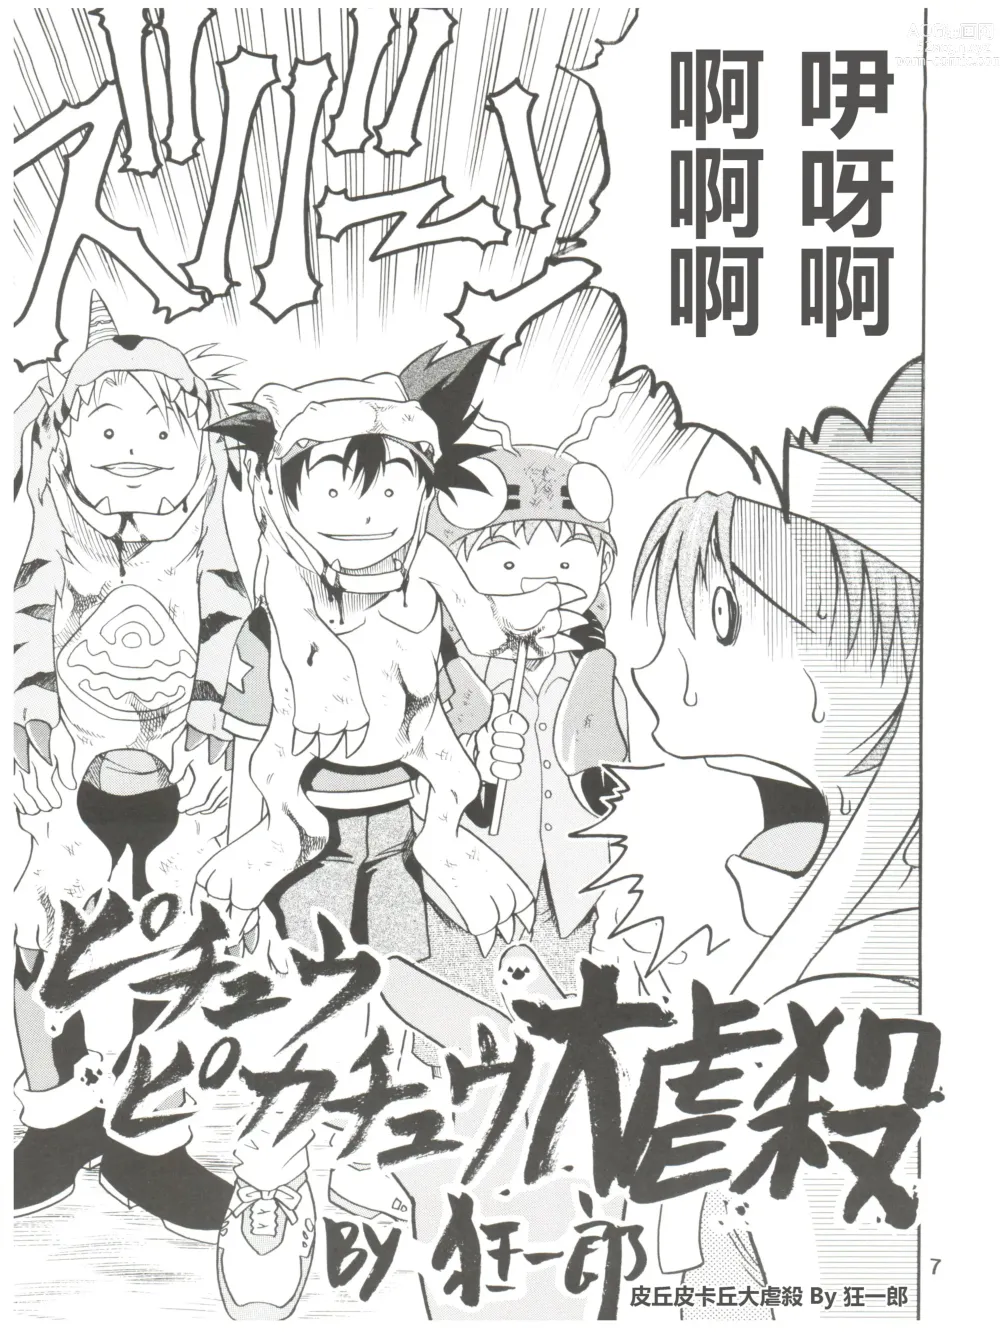 Page 7 of doujinshi Pichuu Pikachuu Daigyakusatsu